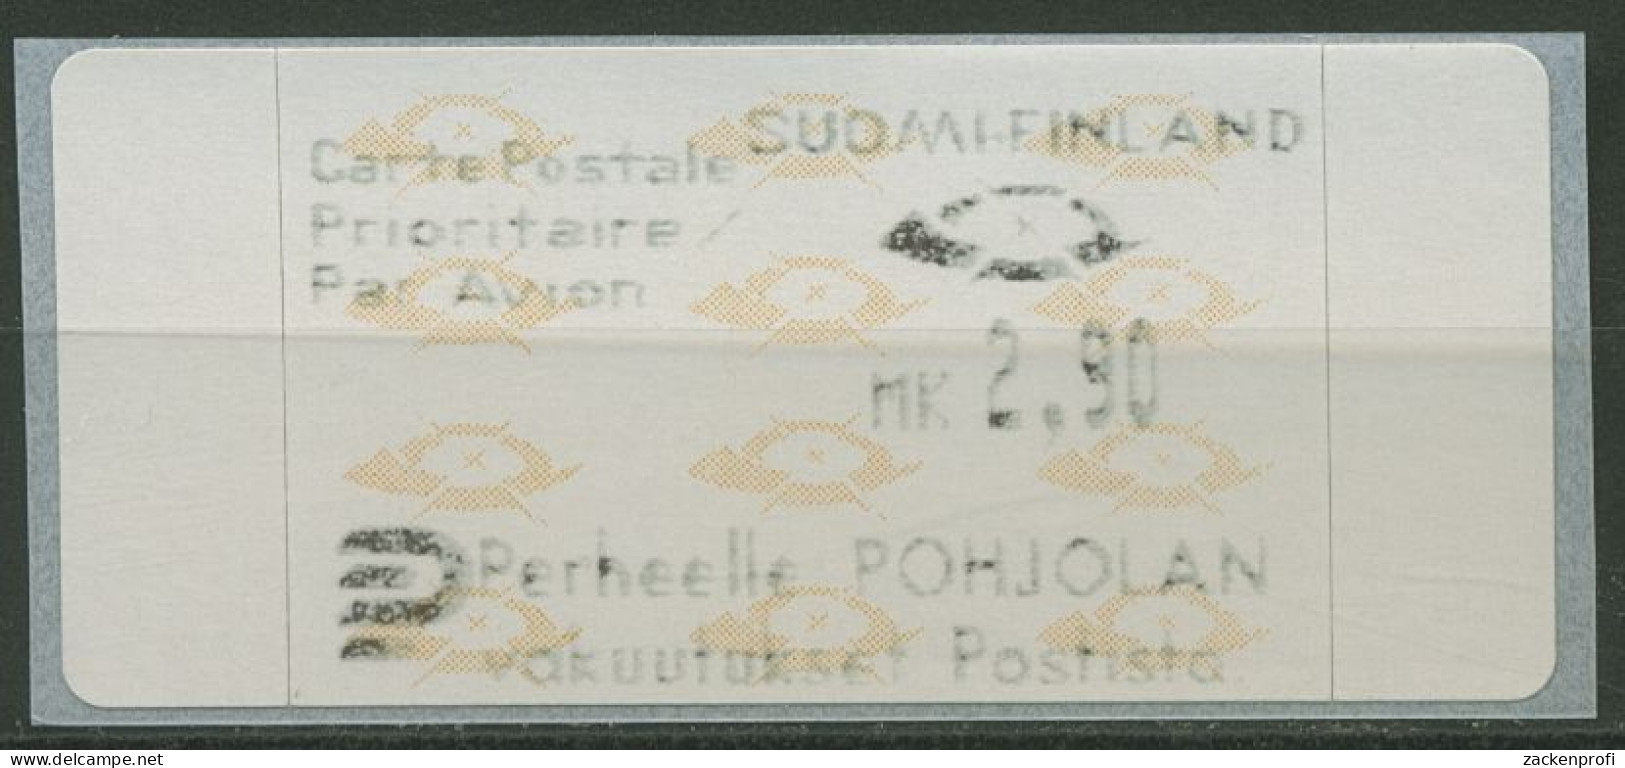 Finnland Automatenmarken 1992 Posthörner Einzelwert ATM 12.3 Z3 Postfrisch - Machine Labels [ATM]